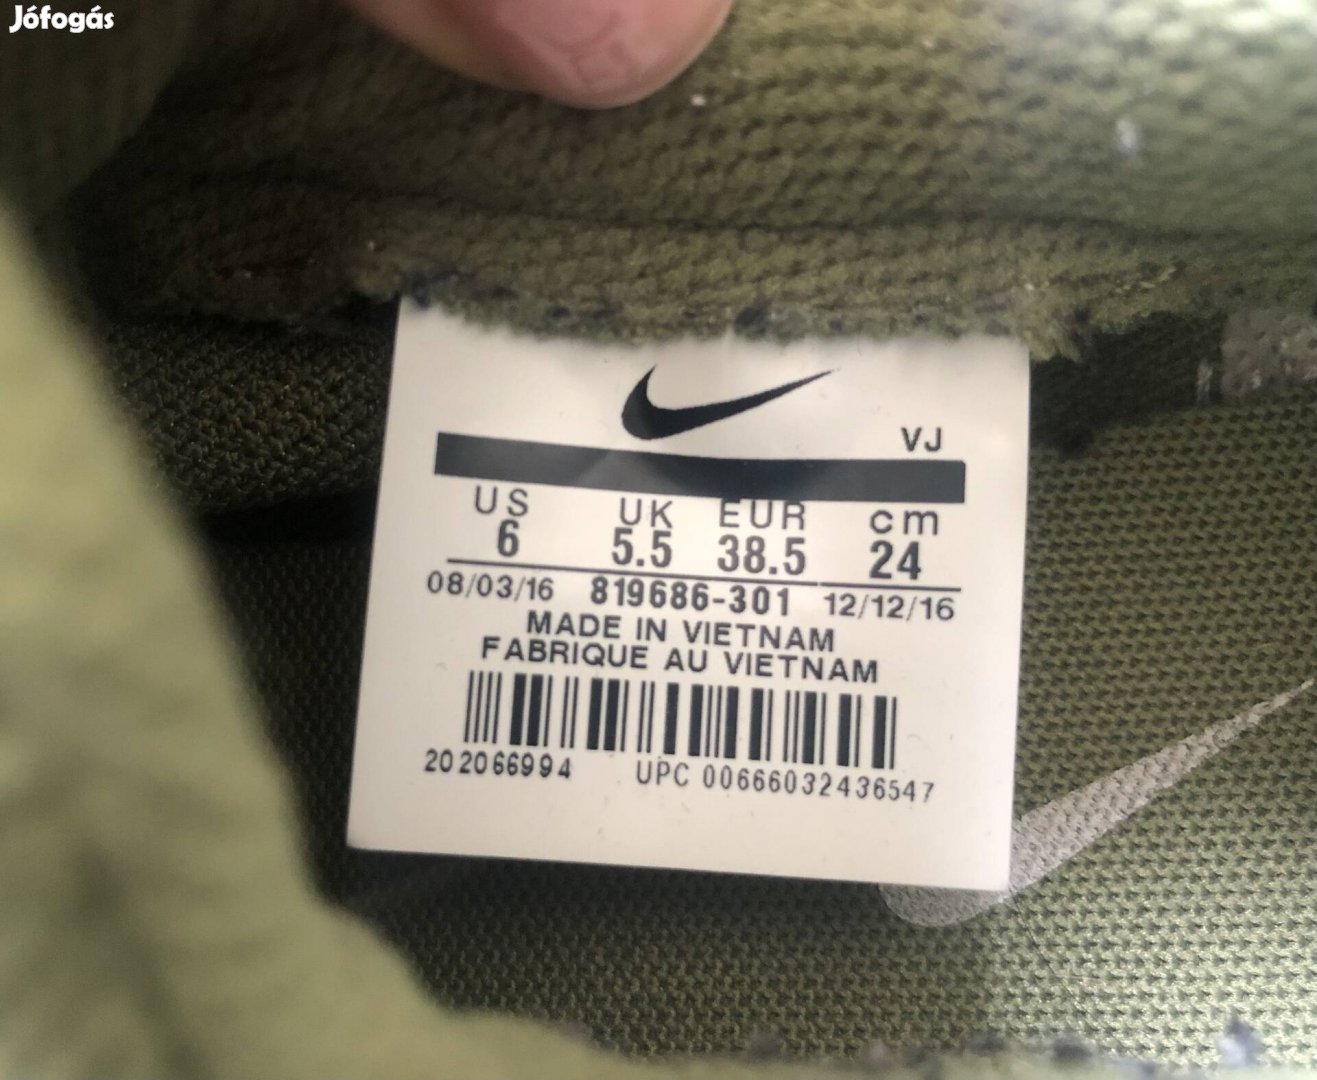 Nike cipő 38.5